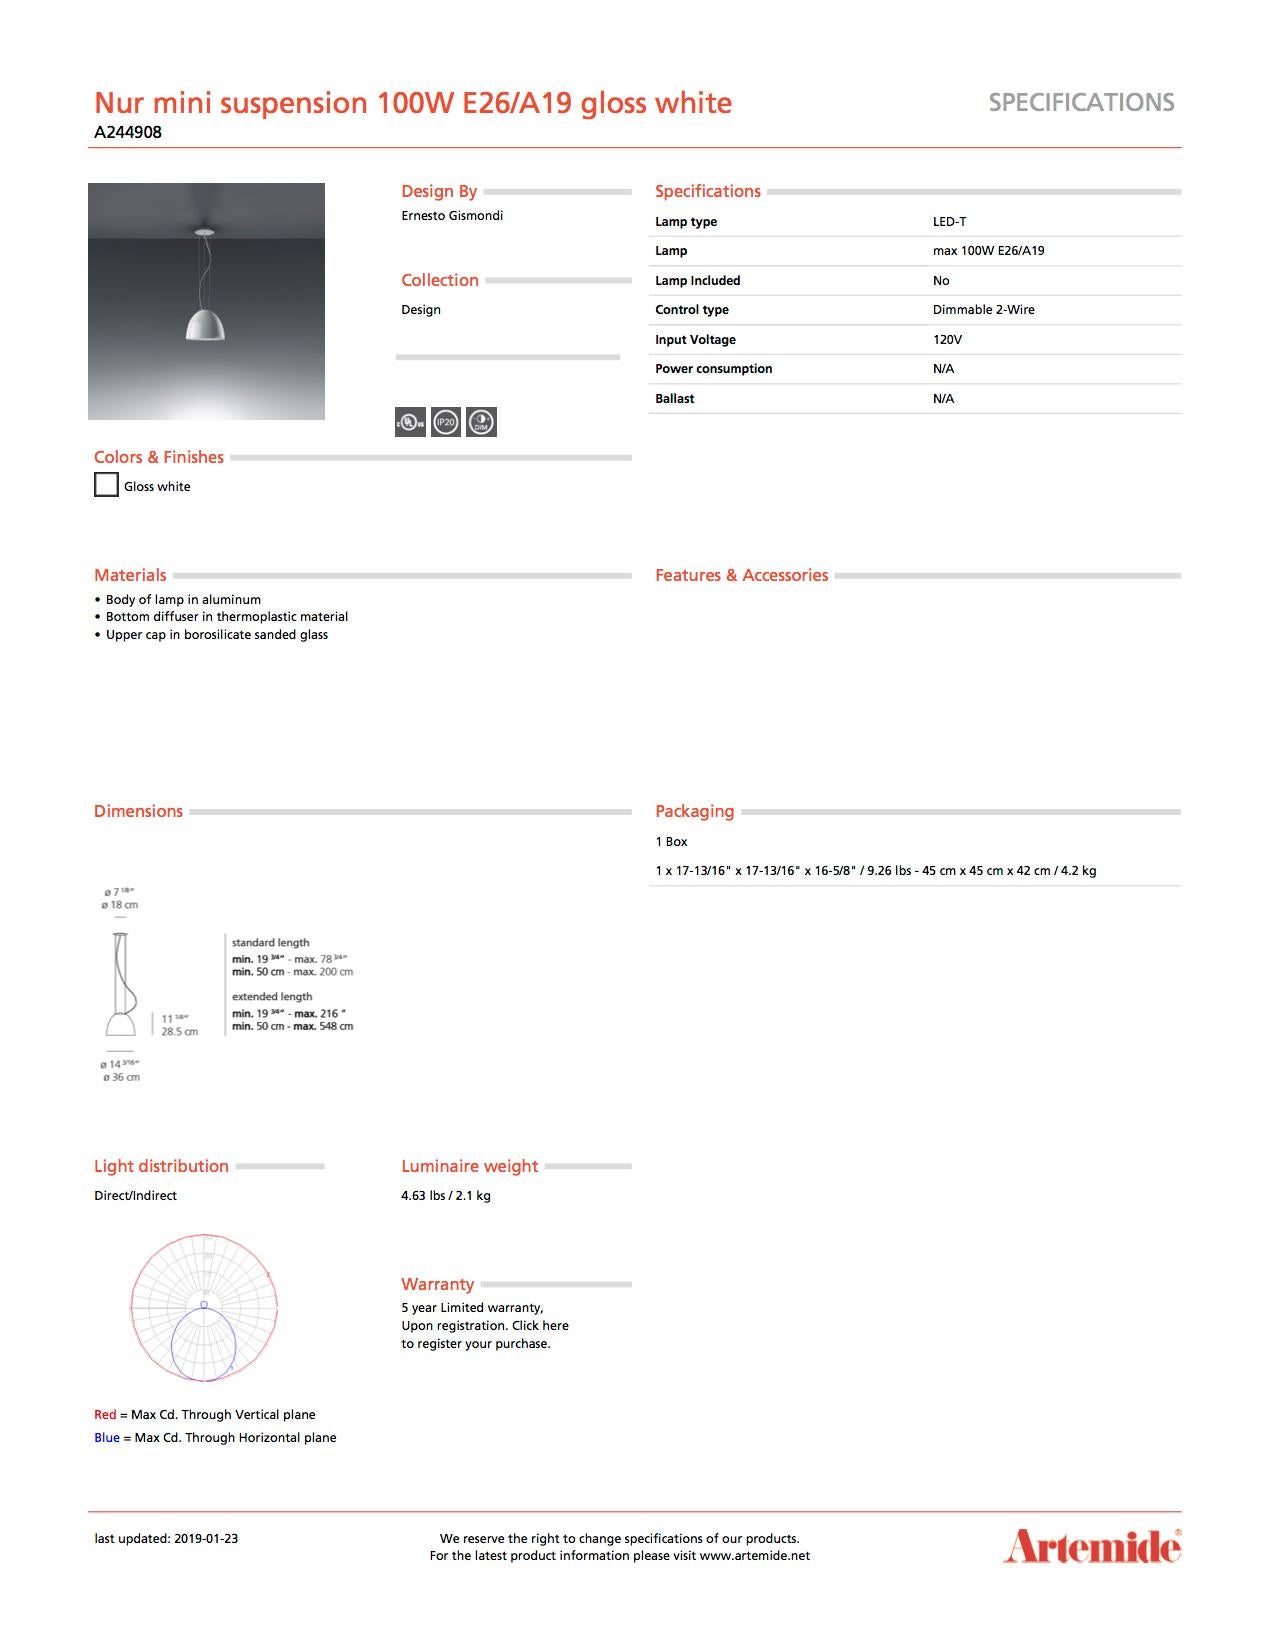 Italian Artemide Nur Mini Suspension Light 100W E26 or A19 in Gloss White For Sale